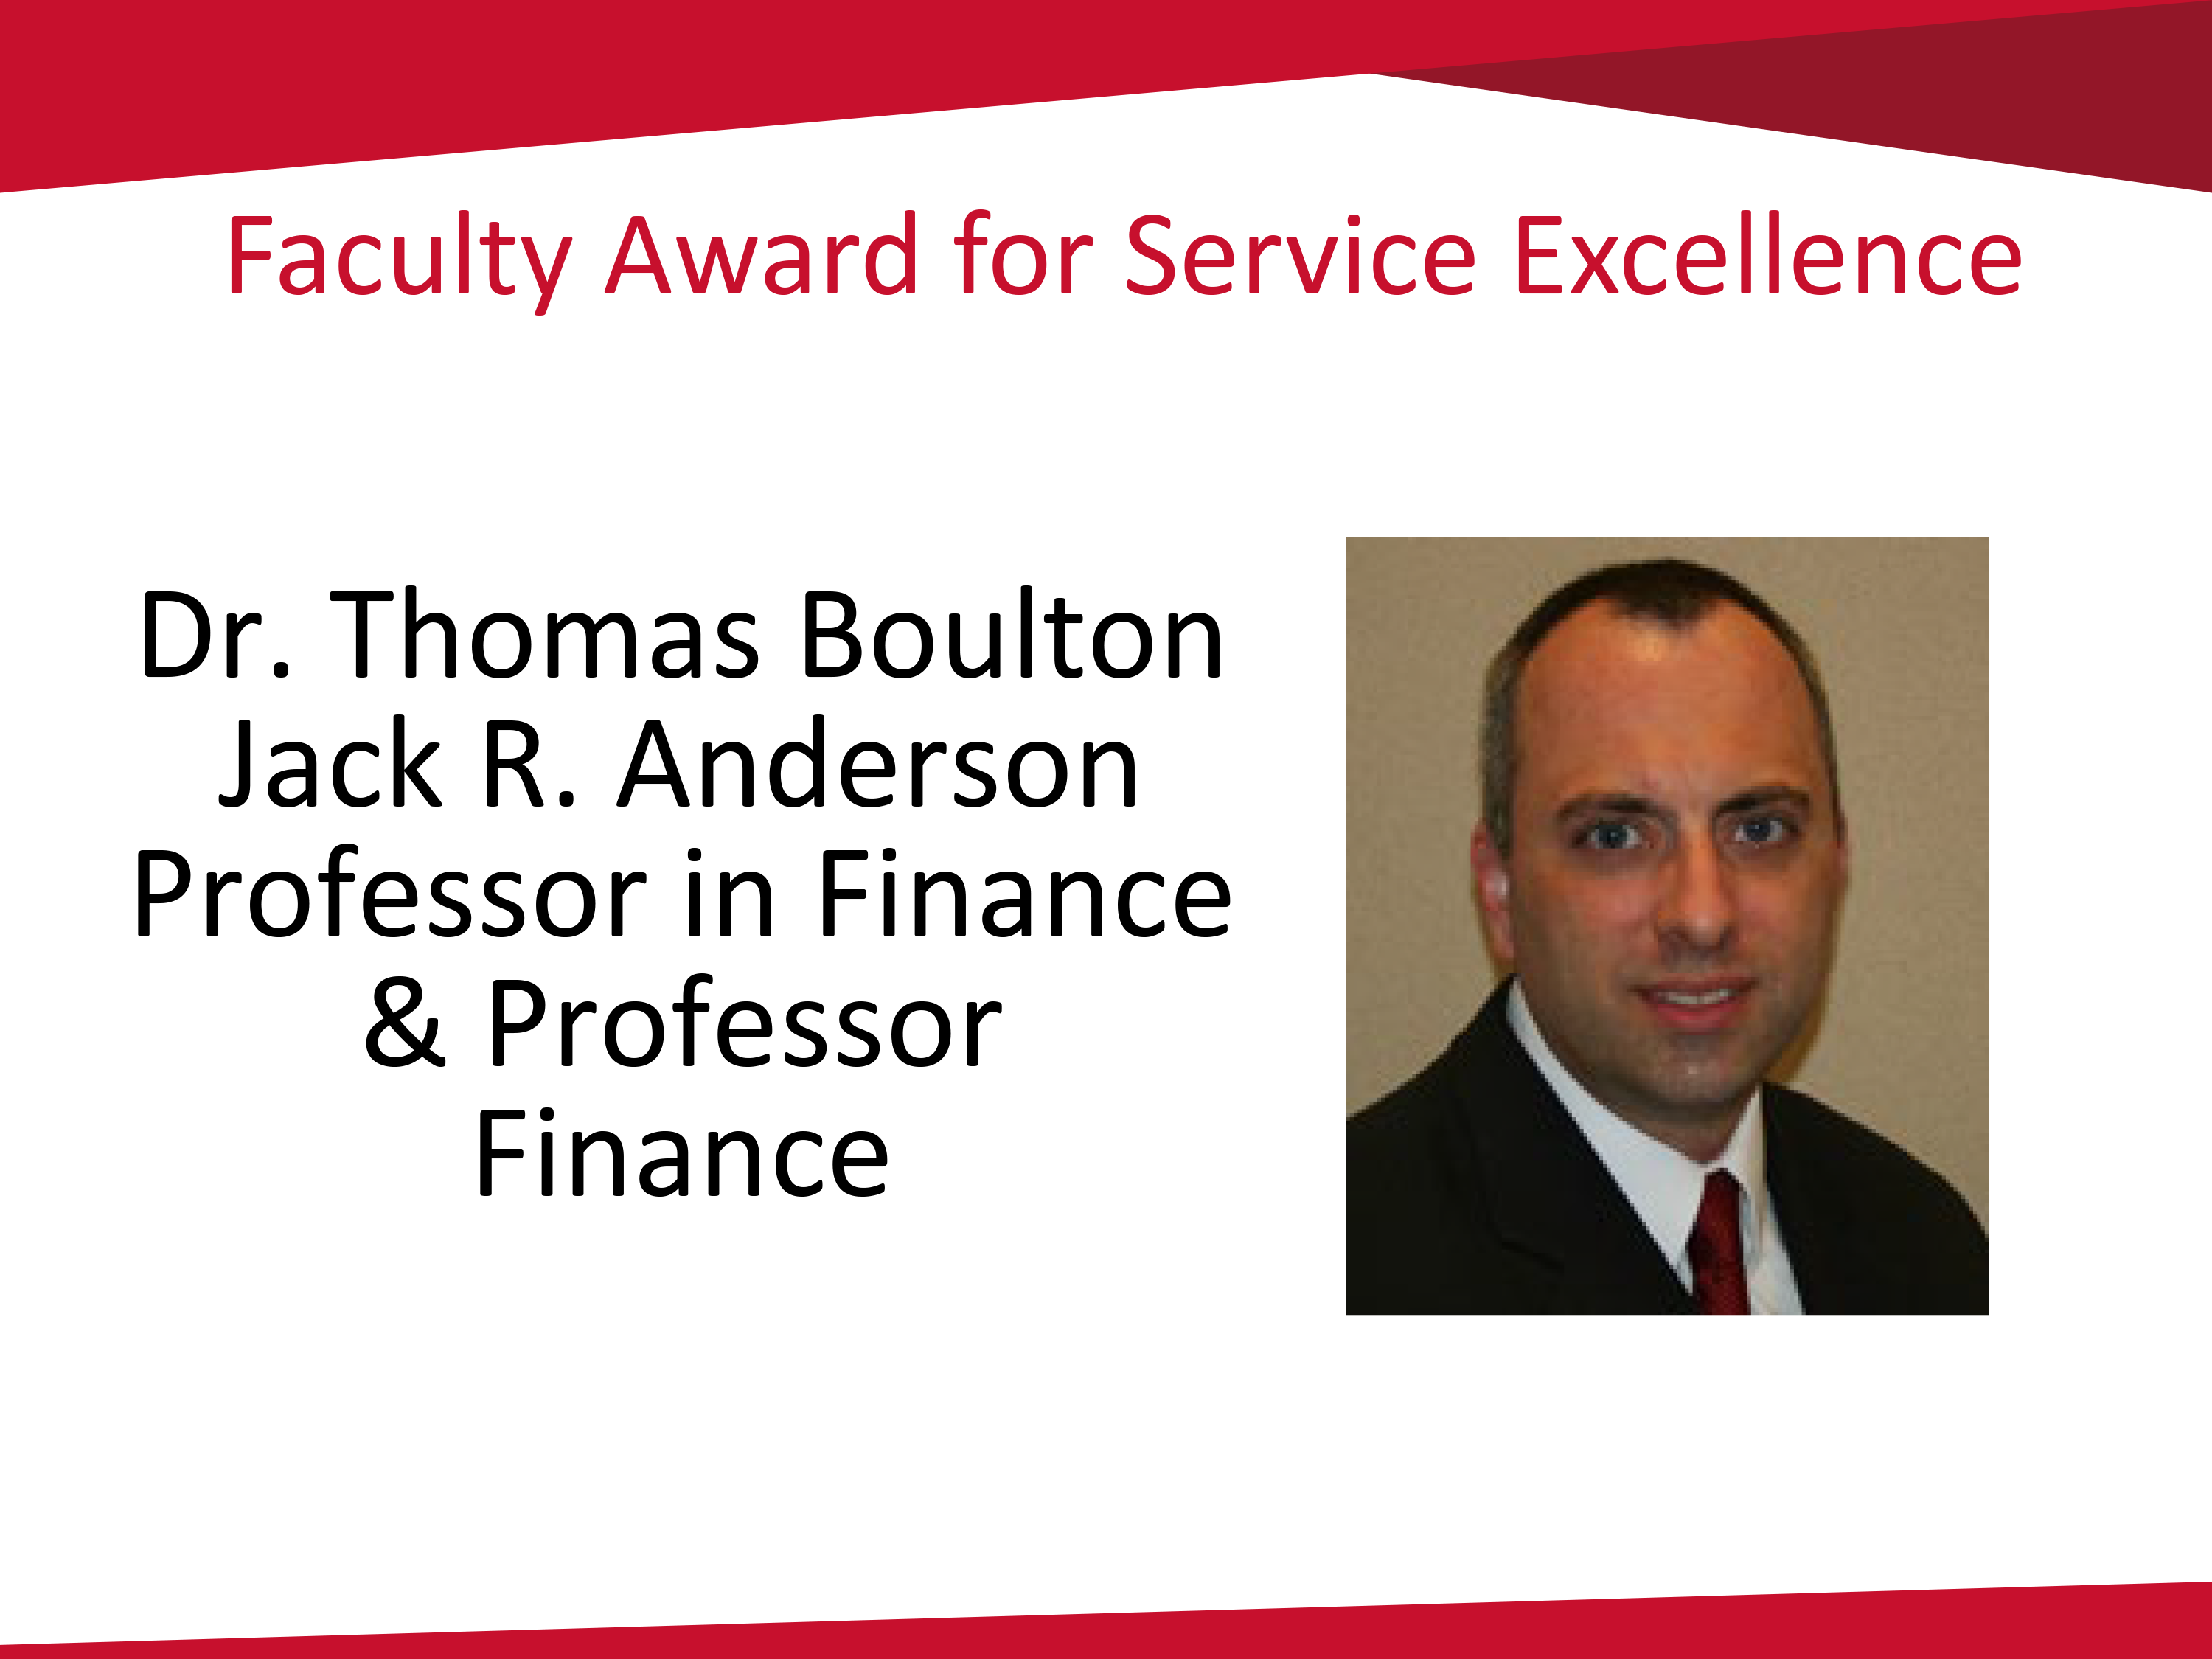 Thomas Boulton award for service excellence